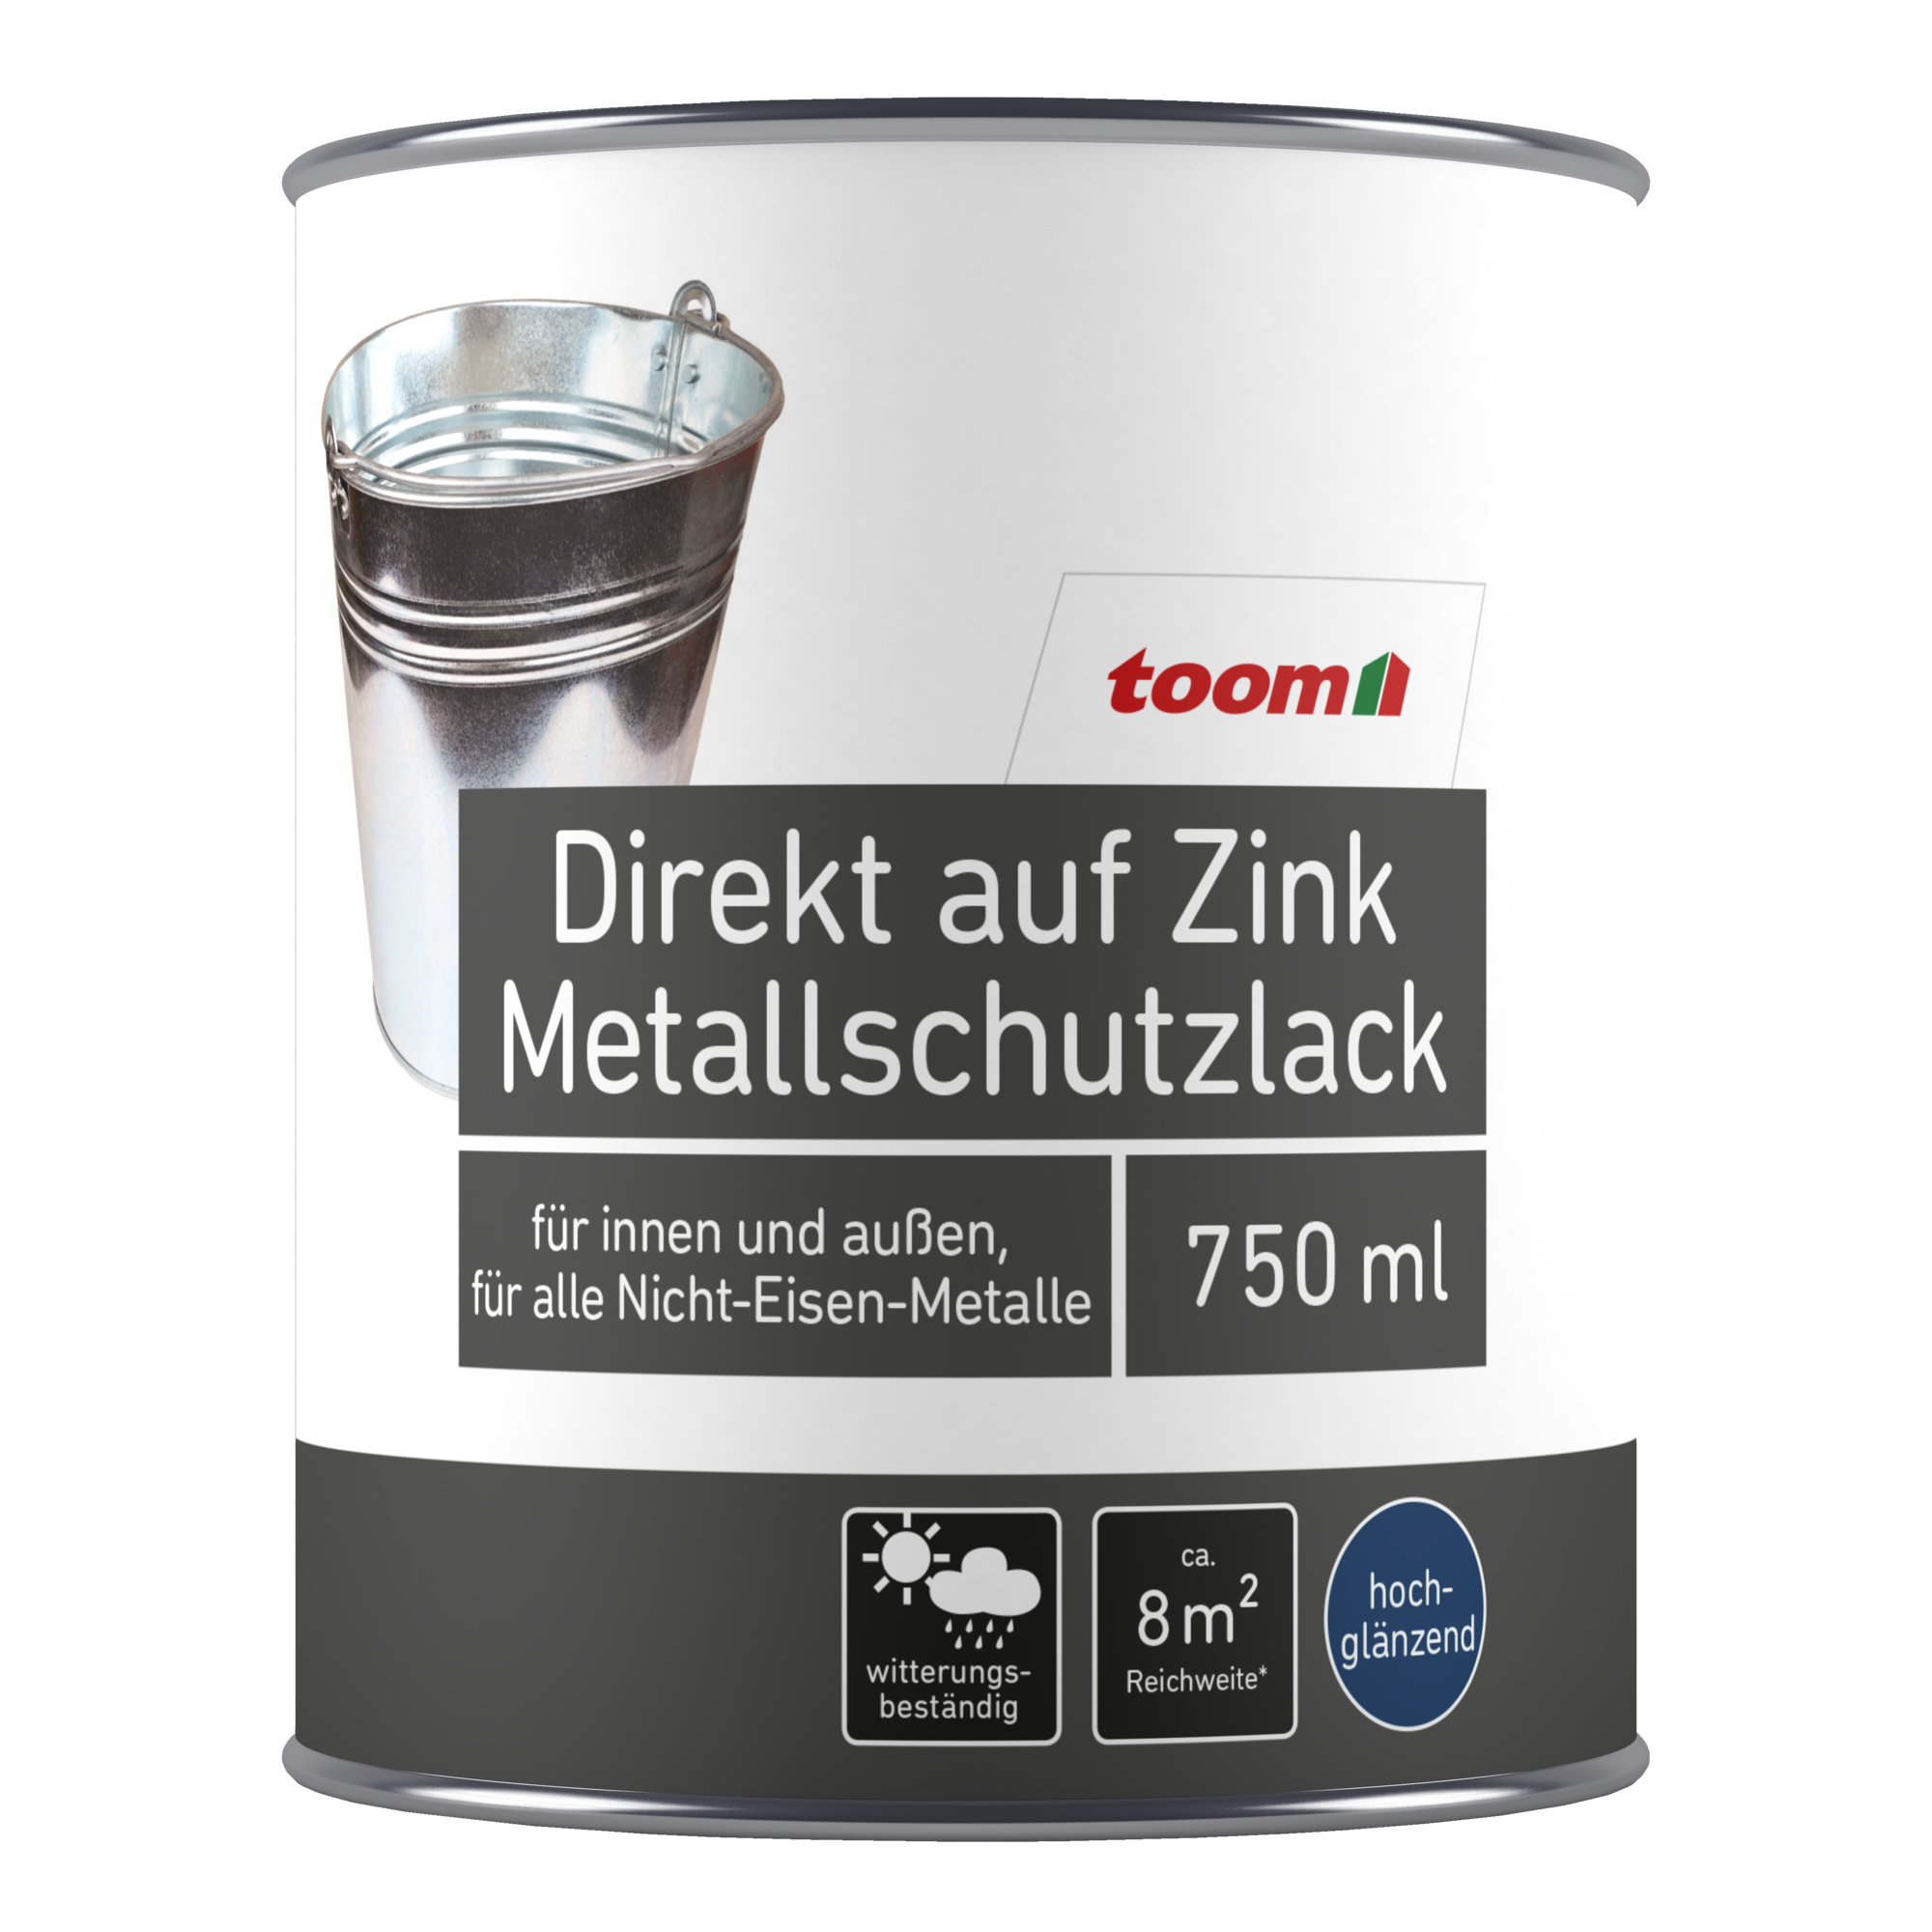 Metallschutzlack weiß glänzend 750 ml + product picture